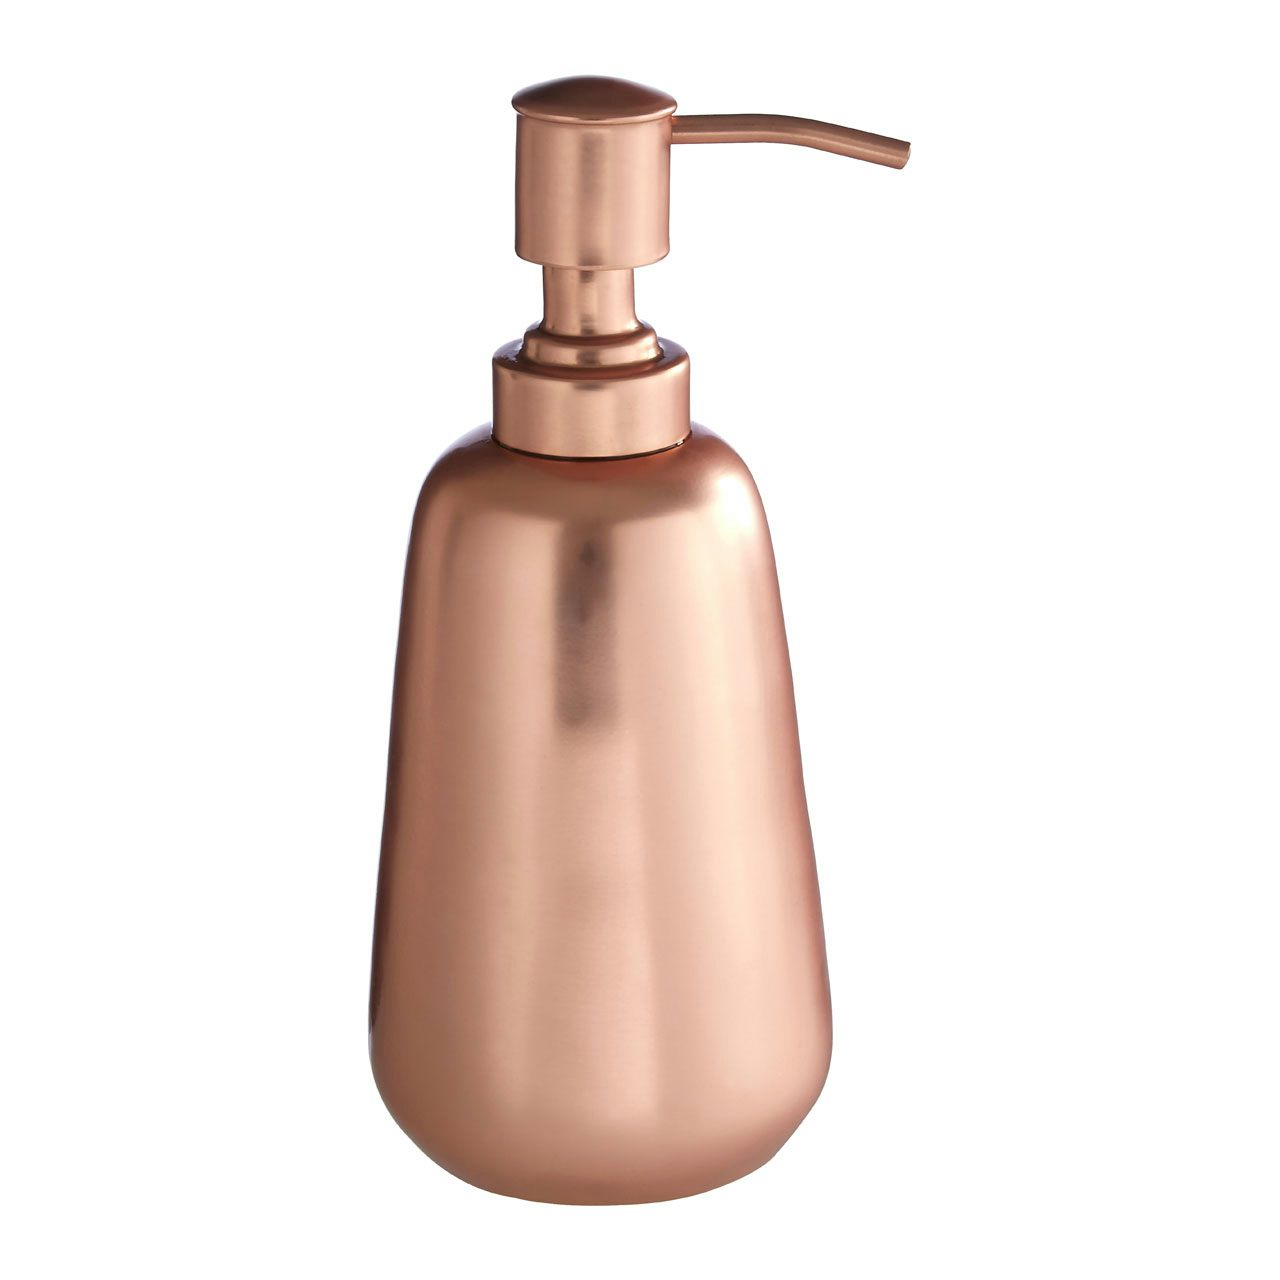 Accents Madison shine copper finish soap dispenser